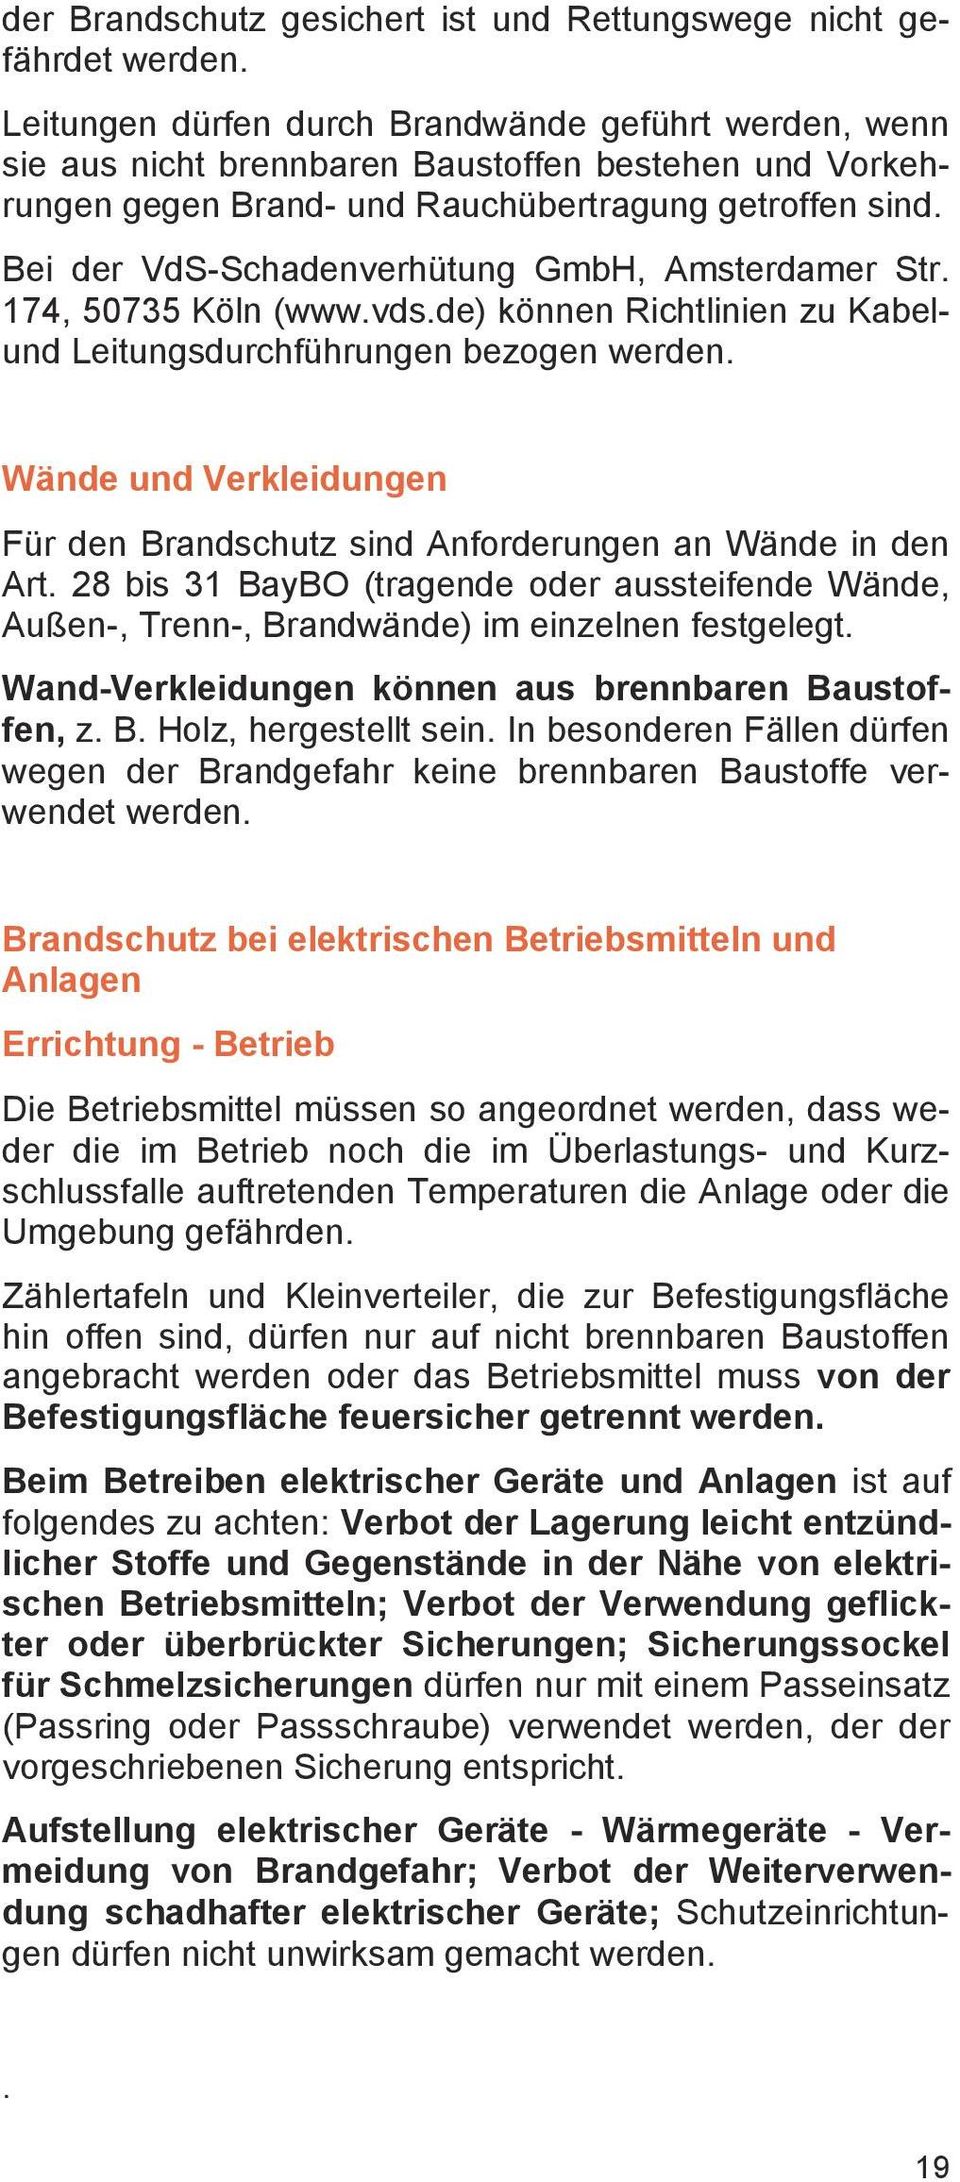 Bei der VdS-Schadenverhütung GmbH, Amsterdamer Str. 174, 50735 Köln (www.vds.de) können Richtlinien zu Kabelund Leitungsdurchführungen bezogen werden.